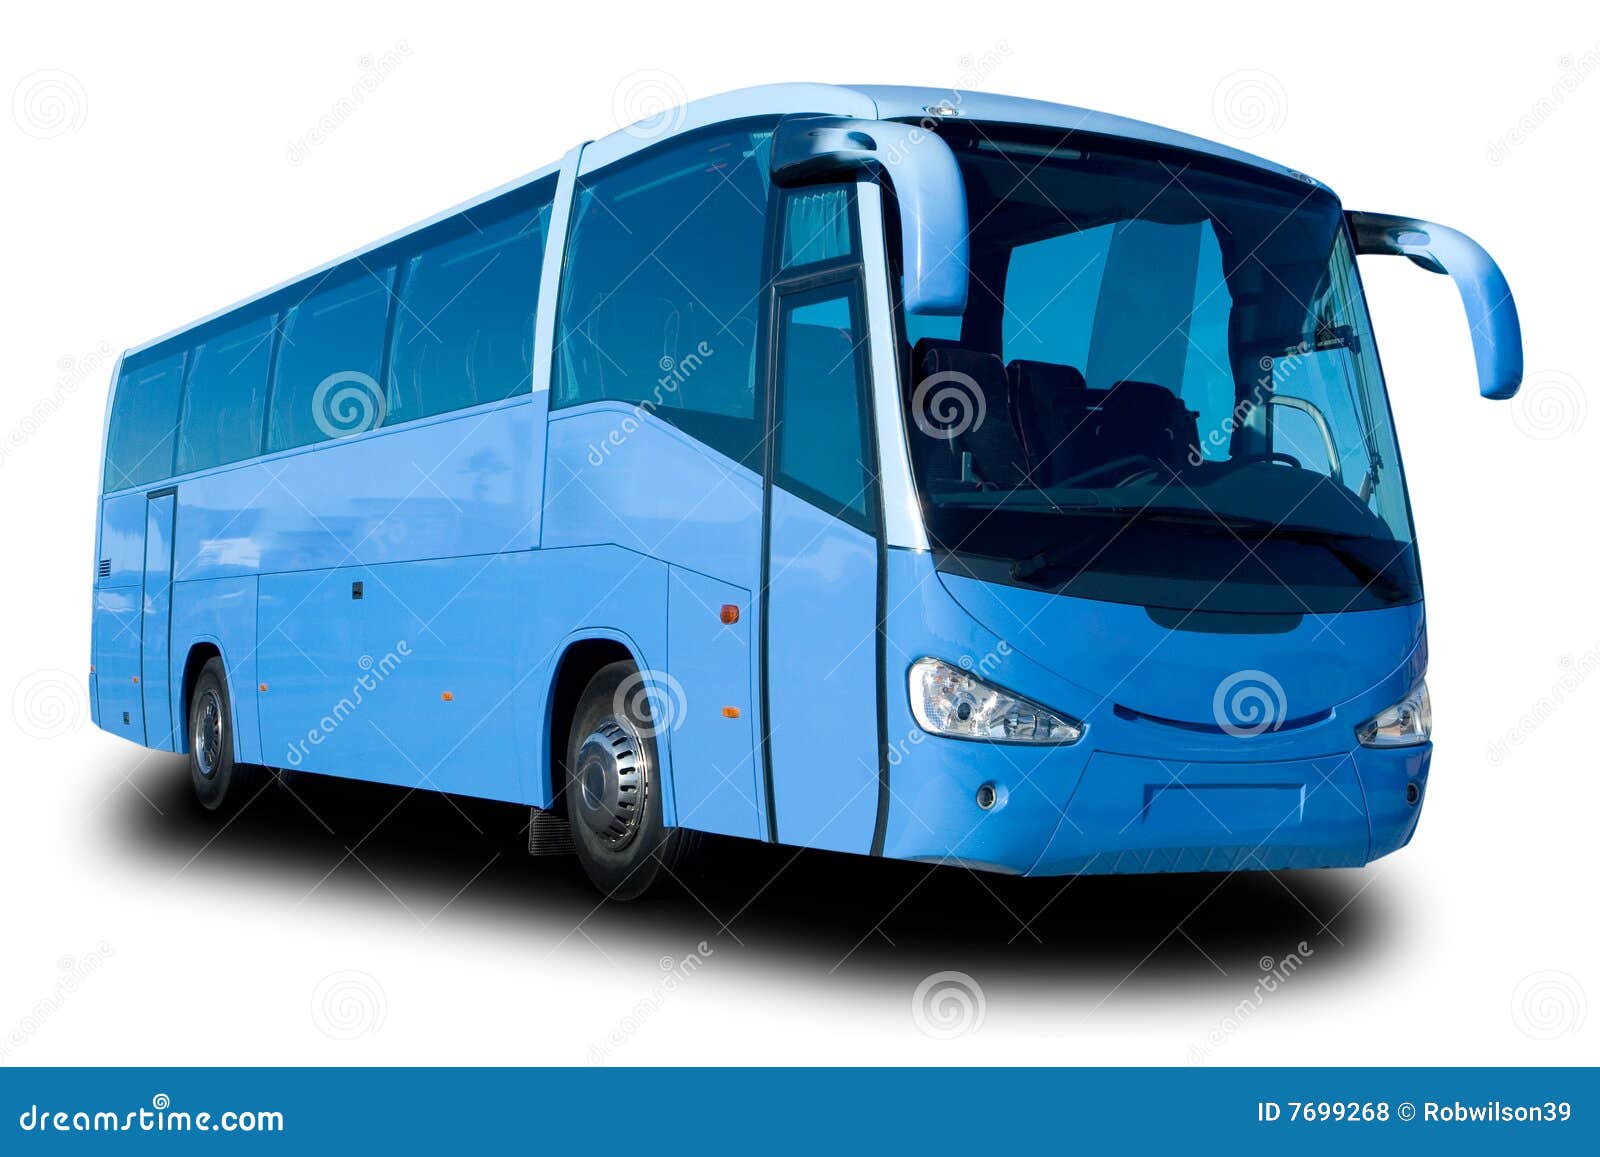 blue city tour bus